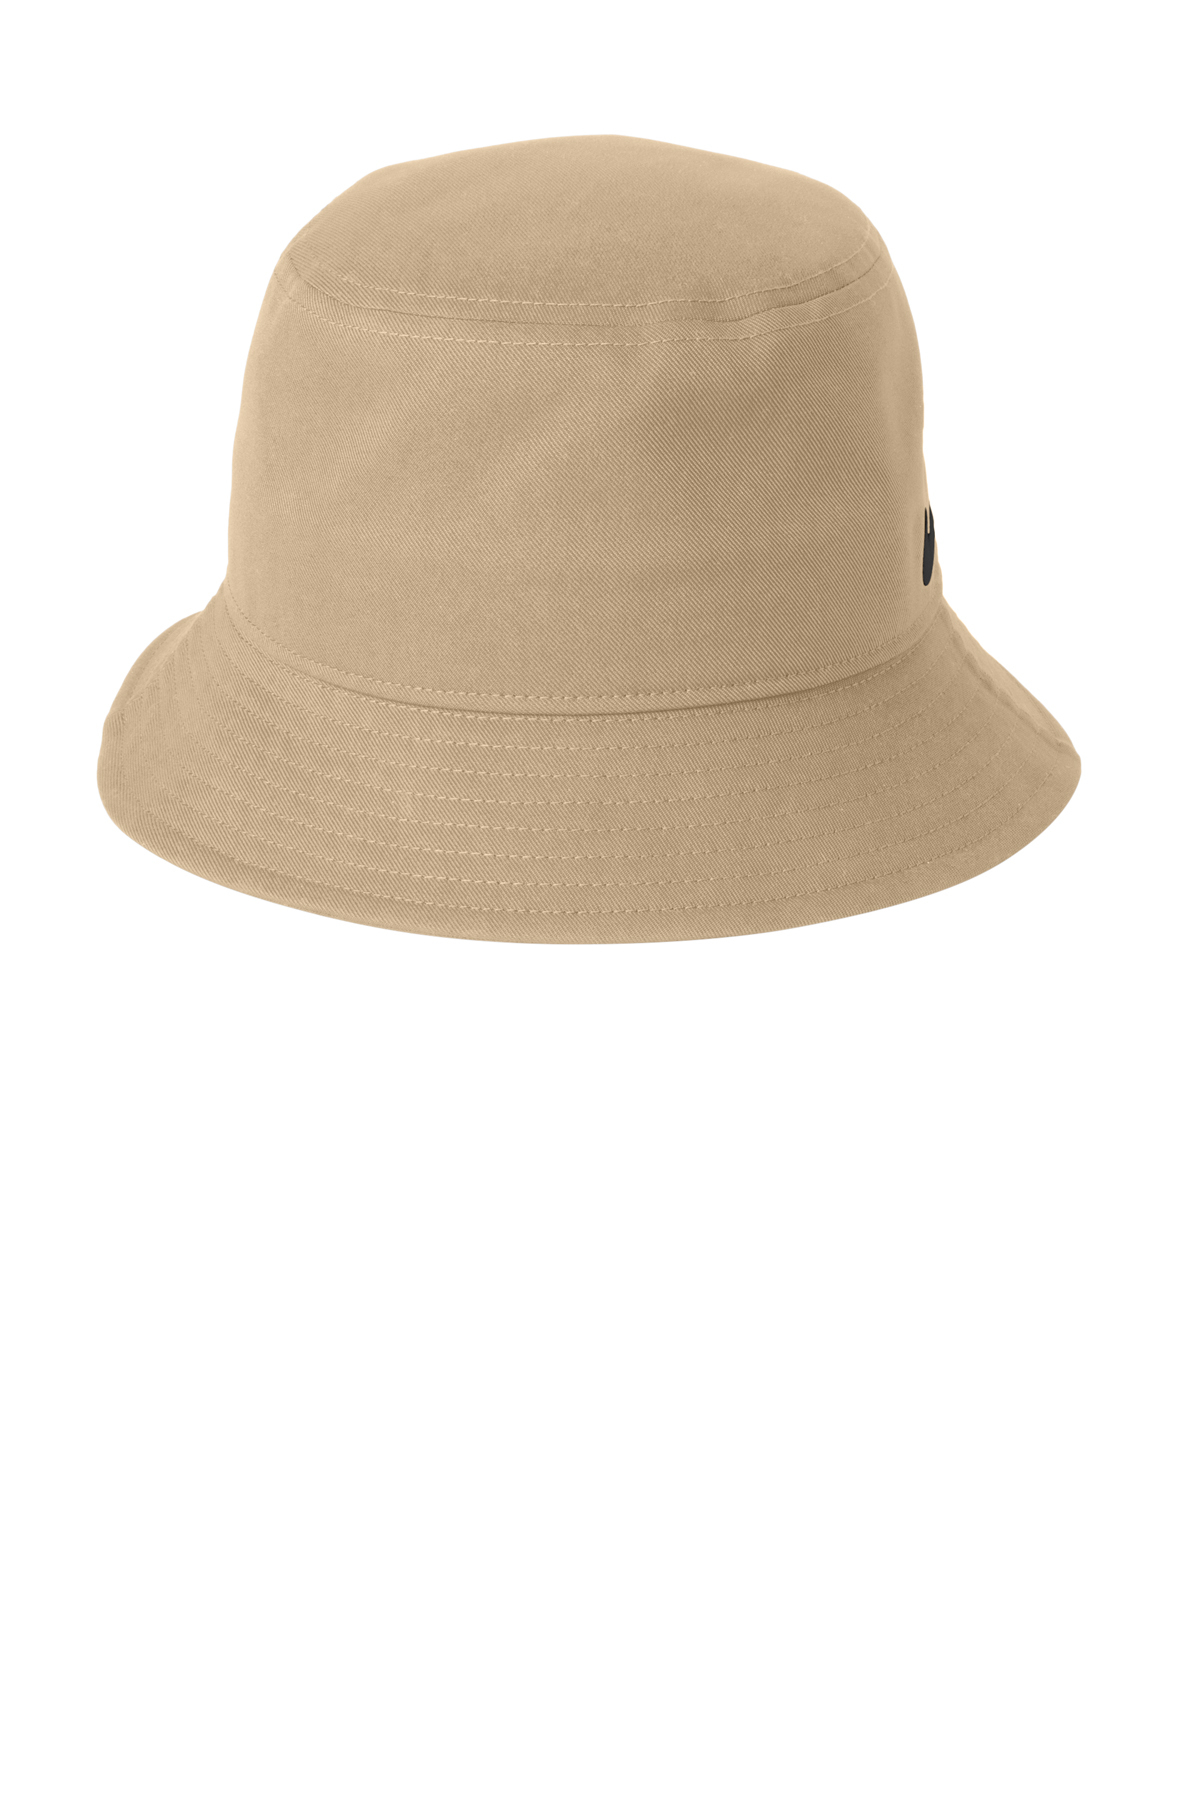 Nike Swoosh Bucket Hat | Product | SanMar